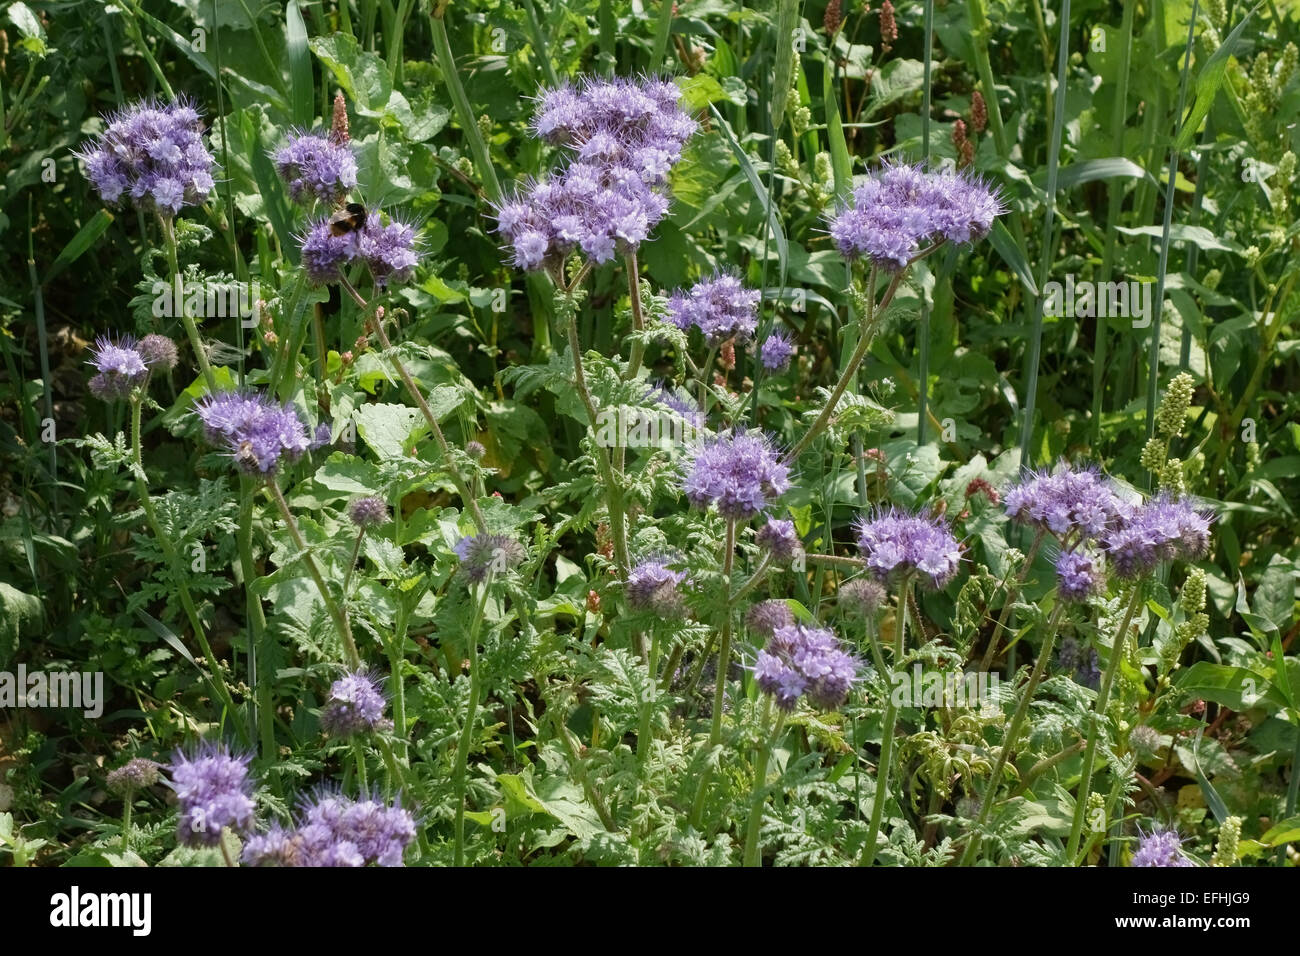 Flores azules de phacelia, Phacelia tanacetifolia, en una franja de flores silvestres utilizadas para atraer a los depredadores de los cultivos herbáceos, Berkshire. Foto de stock